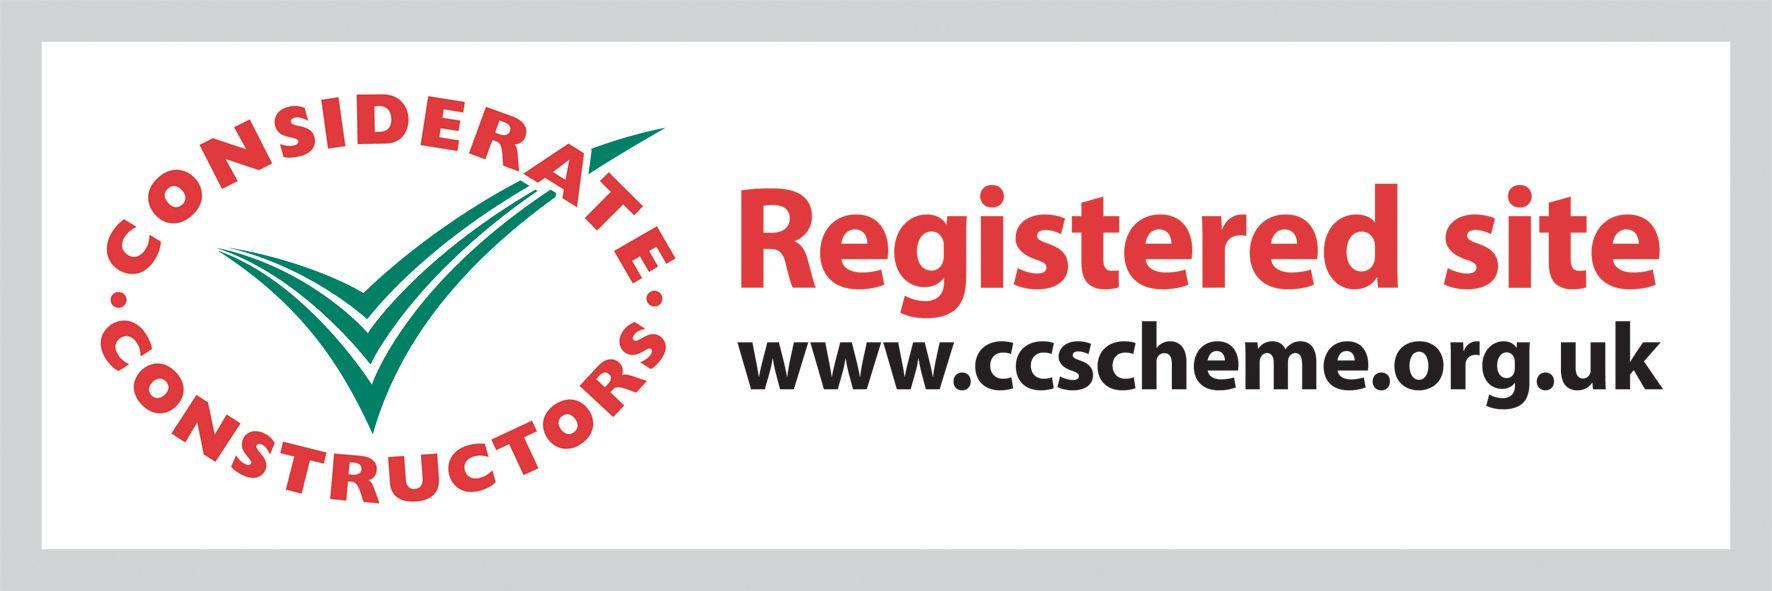 Registration Logo - Registered site logo | ccscheme